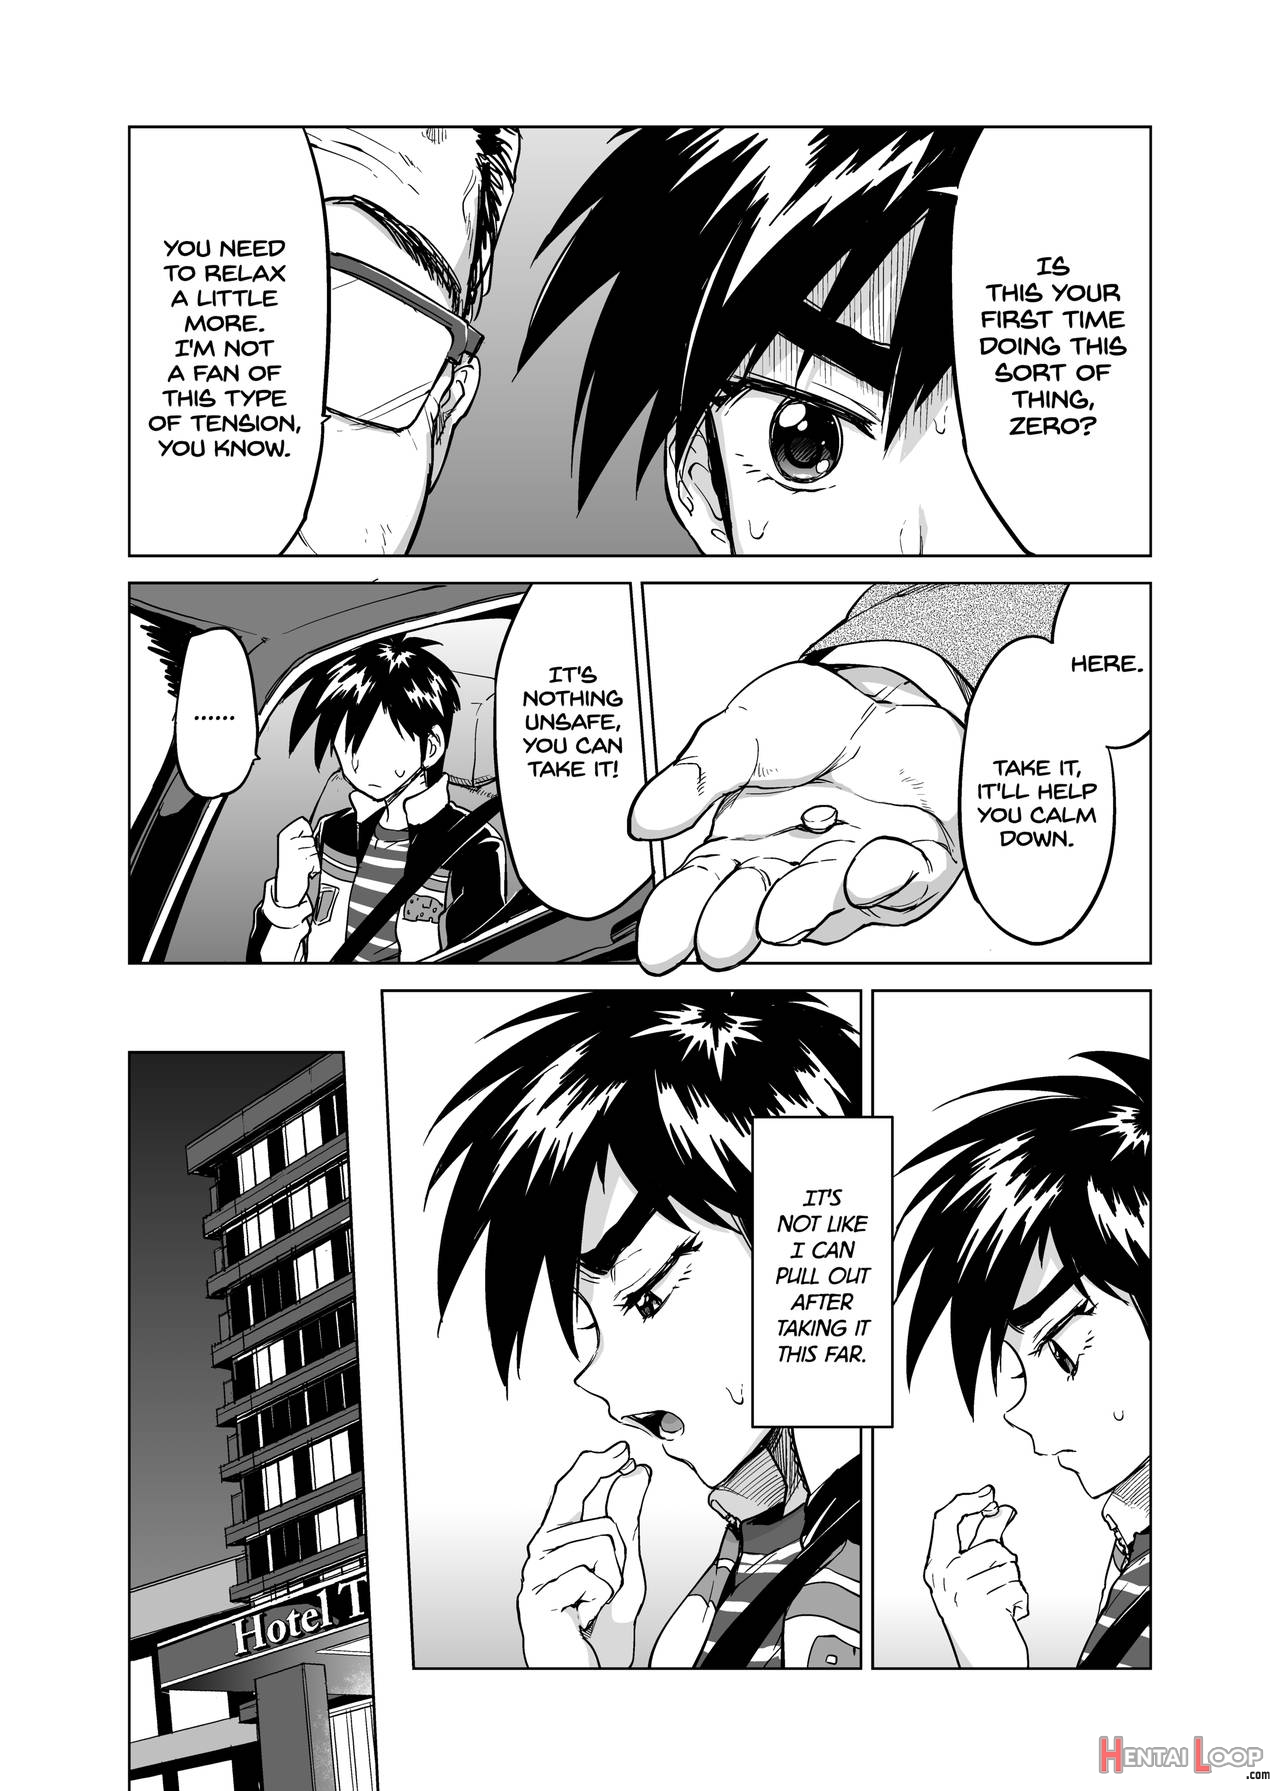 Timezero-kun's Secret First Time page 6